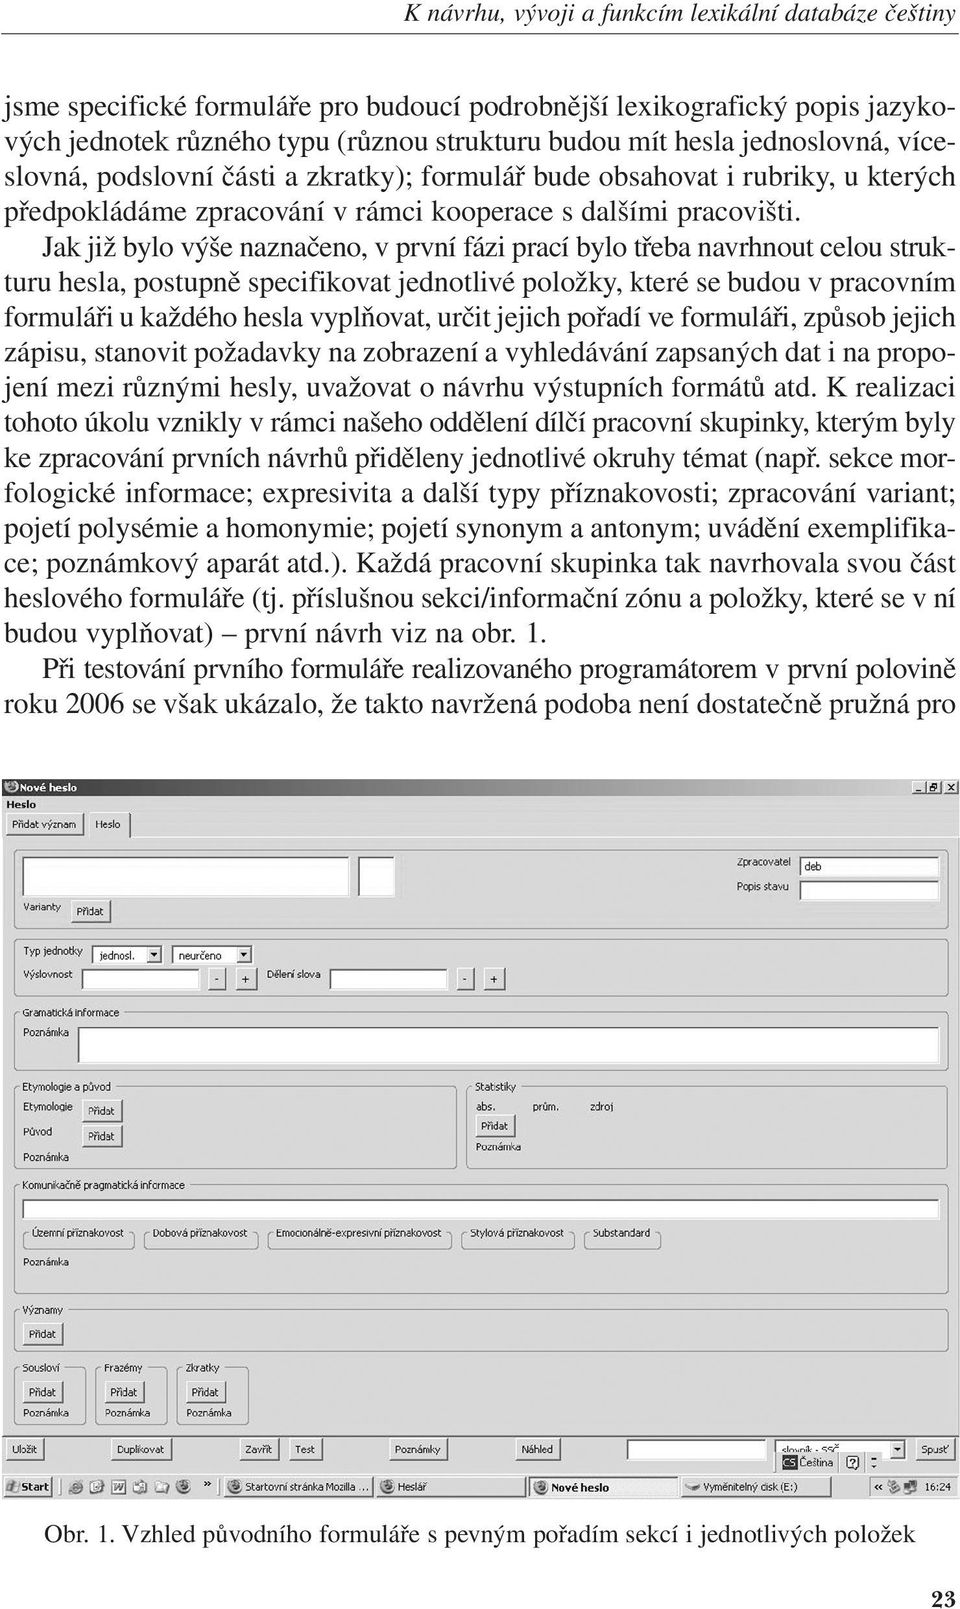 2009 22:03 Stránka 23 K návrhu, vývoji a funkcím lexikální databáze češtiny jsme specifické formuláře pro budoucí podrobnější lexikografický popis jazykových jednotek různého typu (různou strukturu